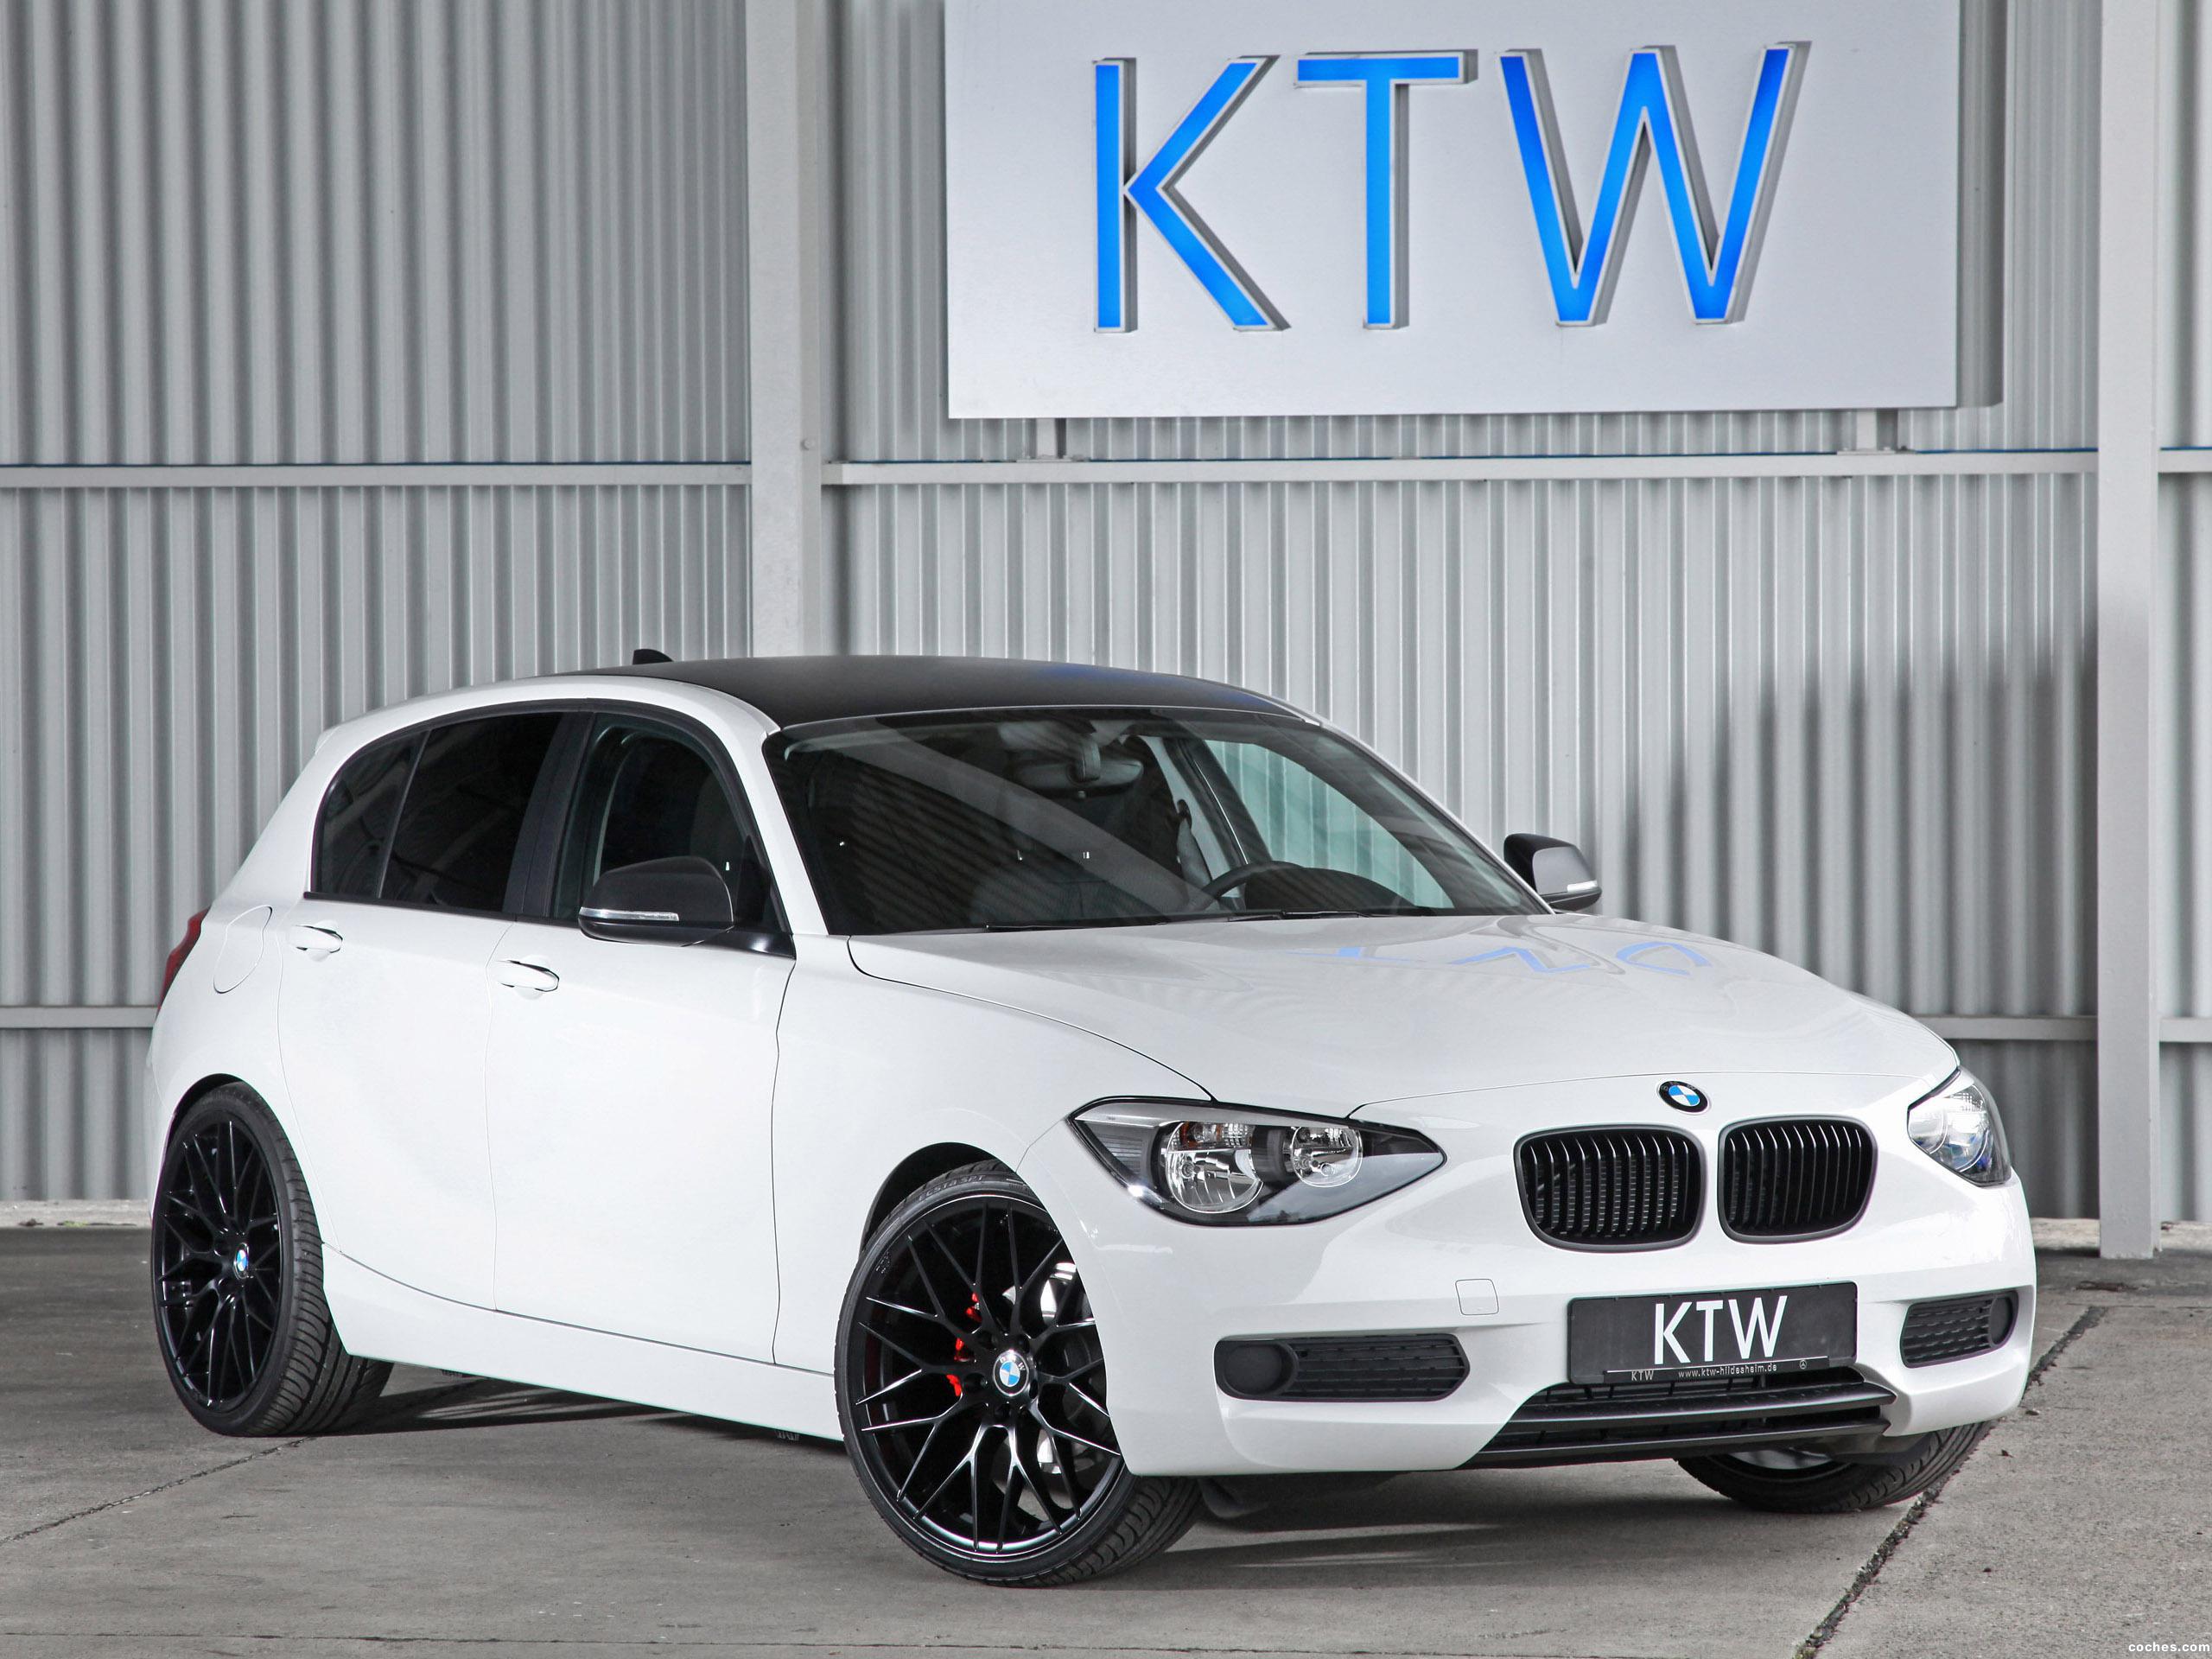 Fotos de BMW KTW Serie 1 2014